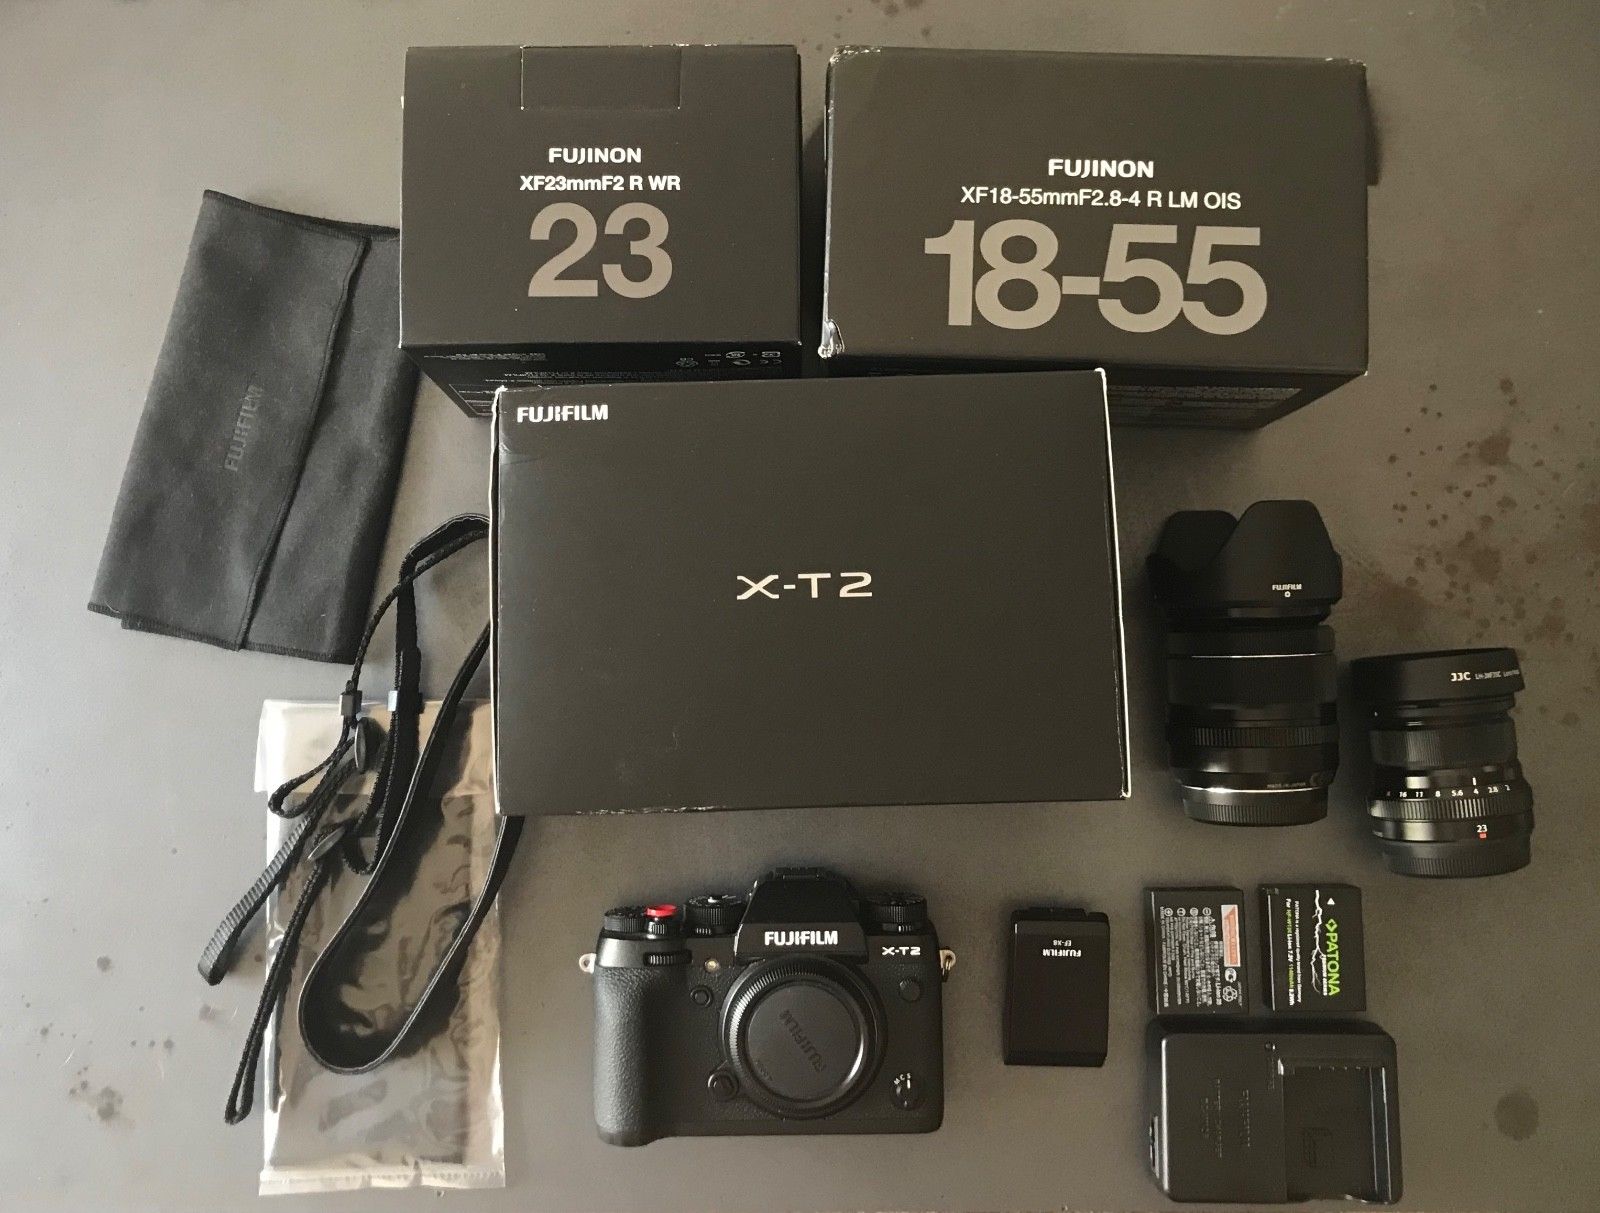 Fujifilm X-T2 Systemkamera Kit, XF18-55 mm, inkl. XF 23mm f/2 R WR Lens (Black)